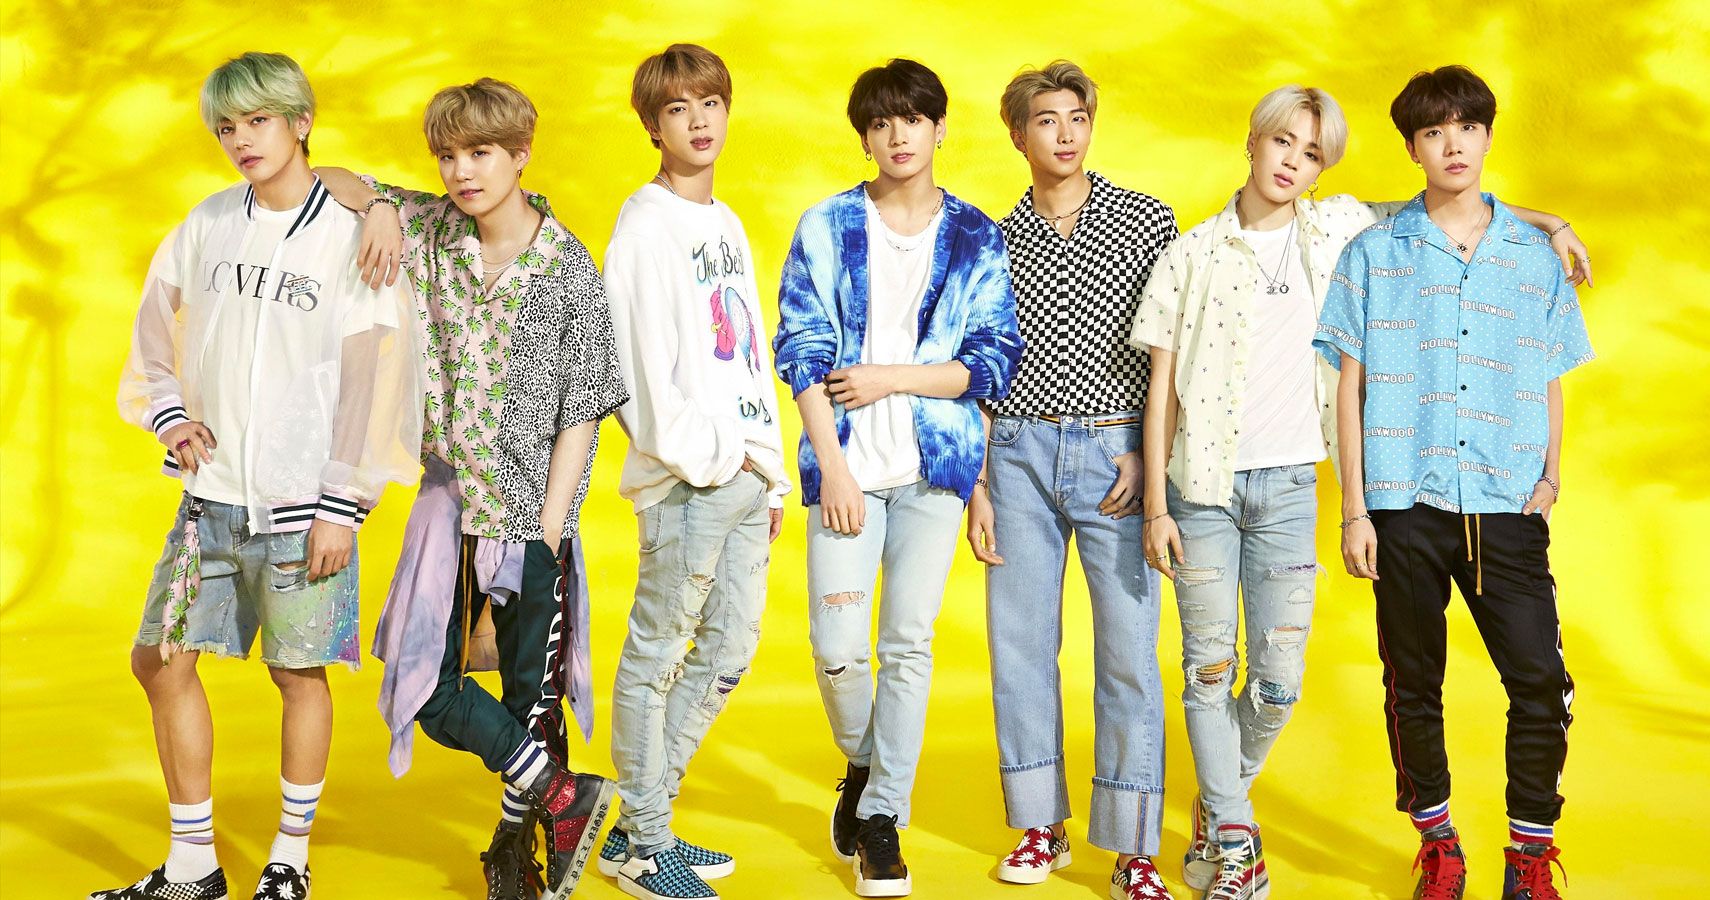 Aqui está o que você precisa saber sobre o grupo Kpop favorito do mundo, BTS